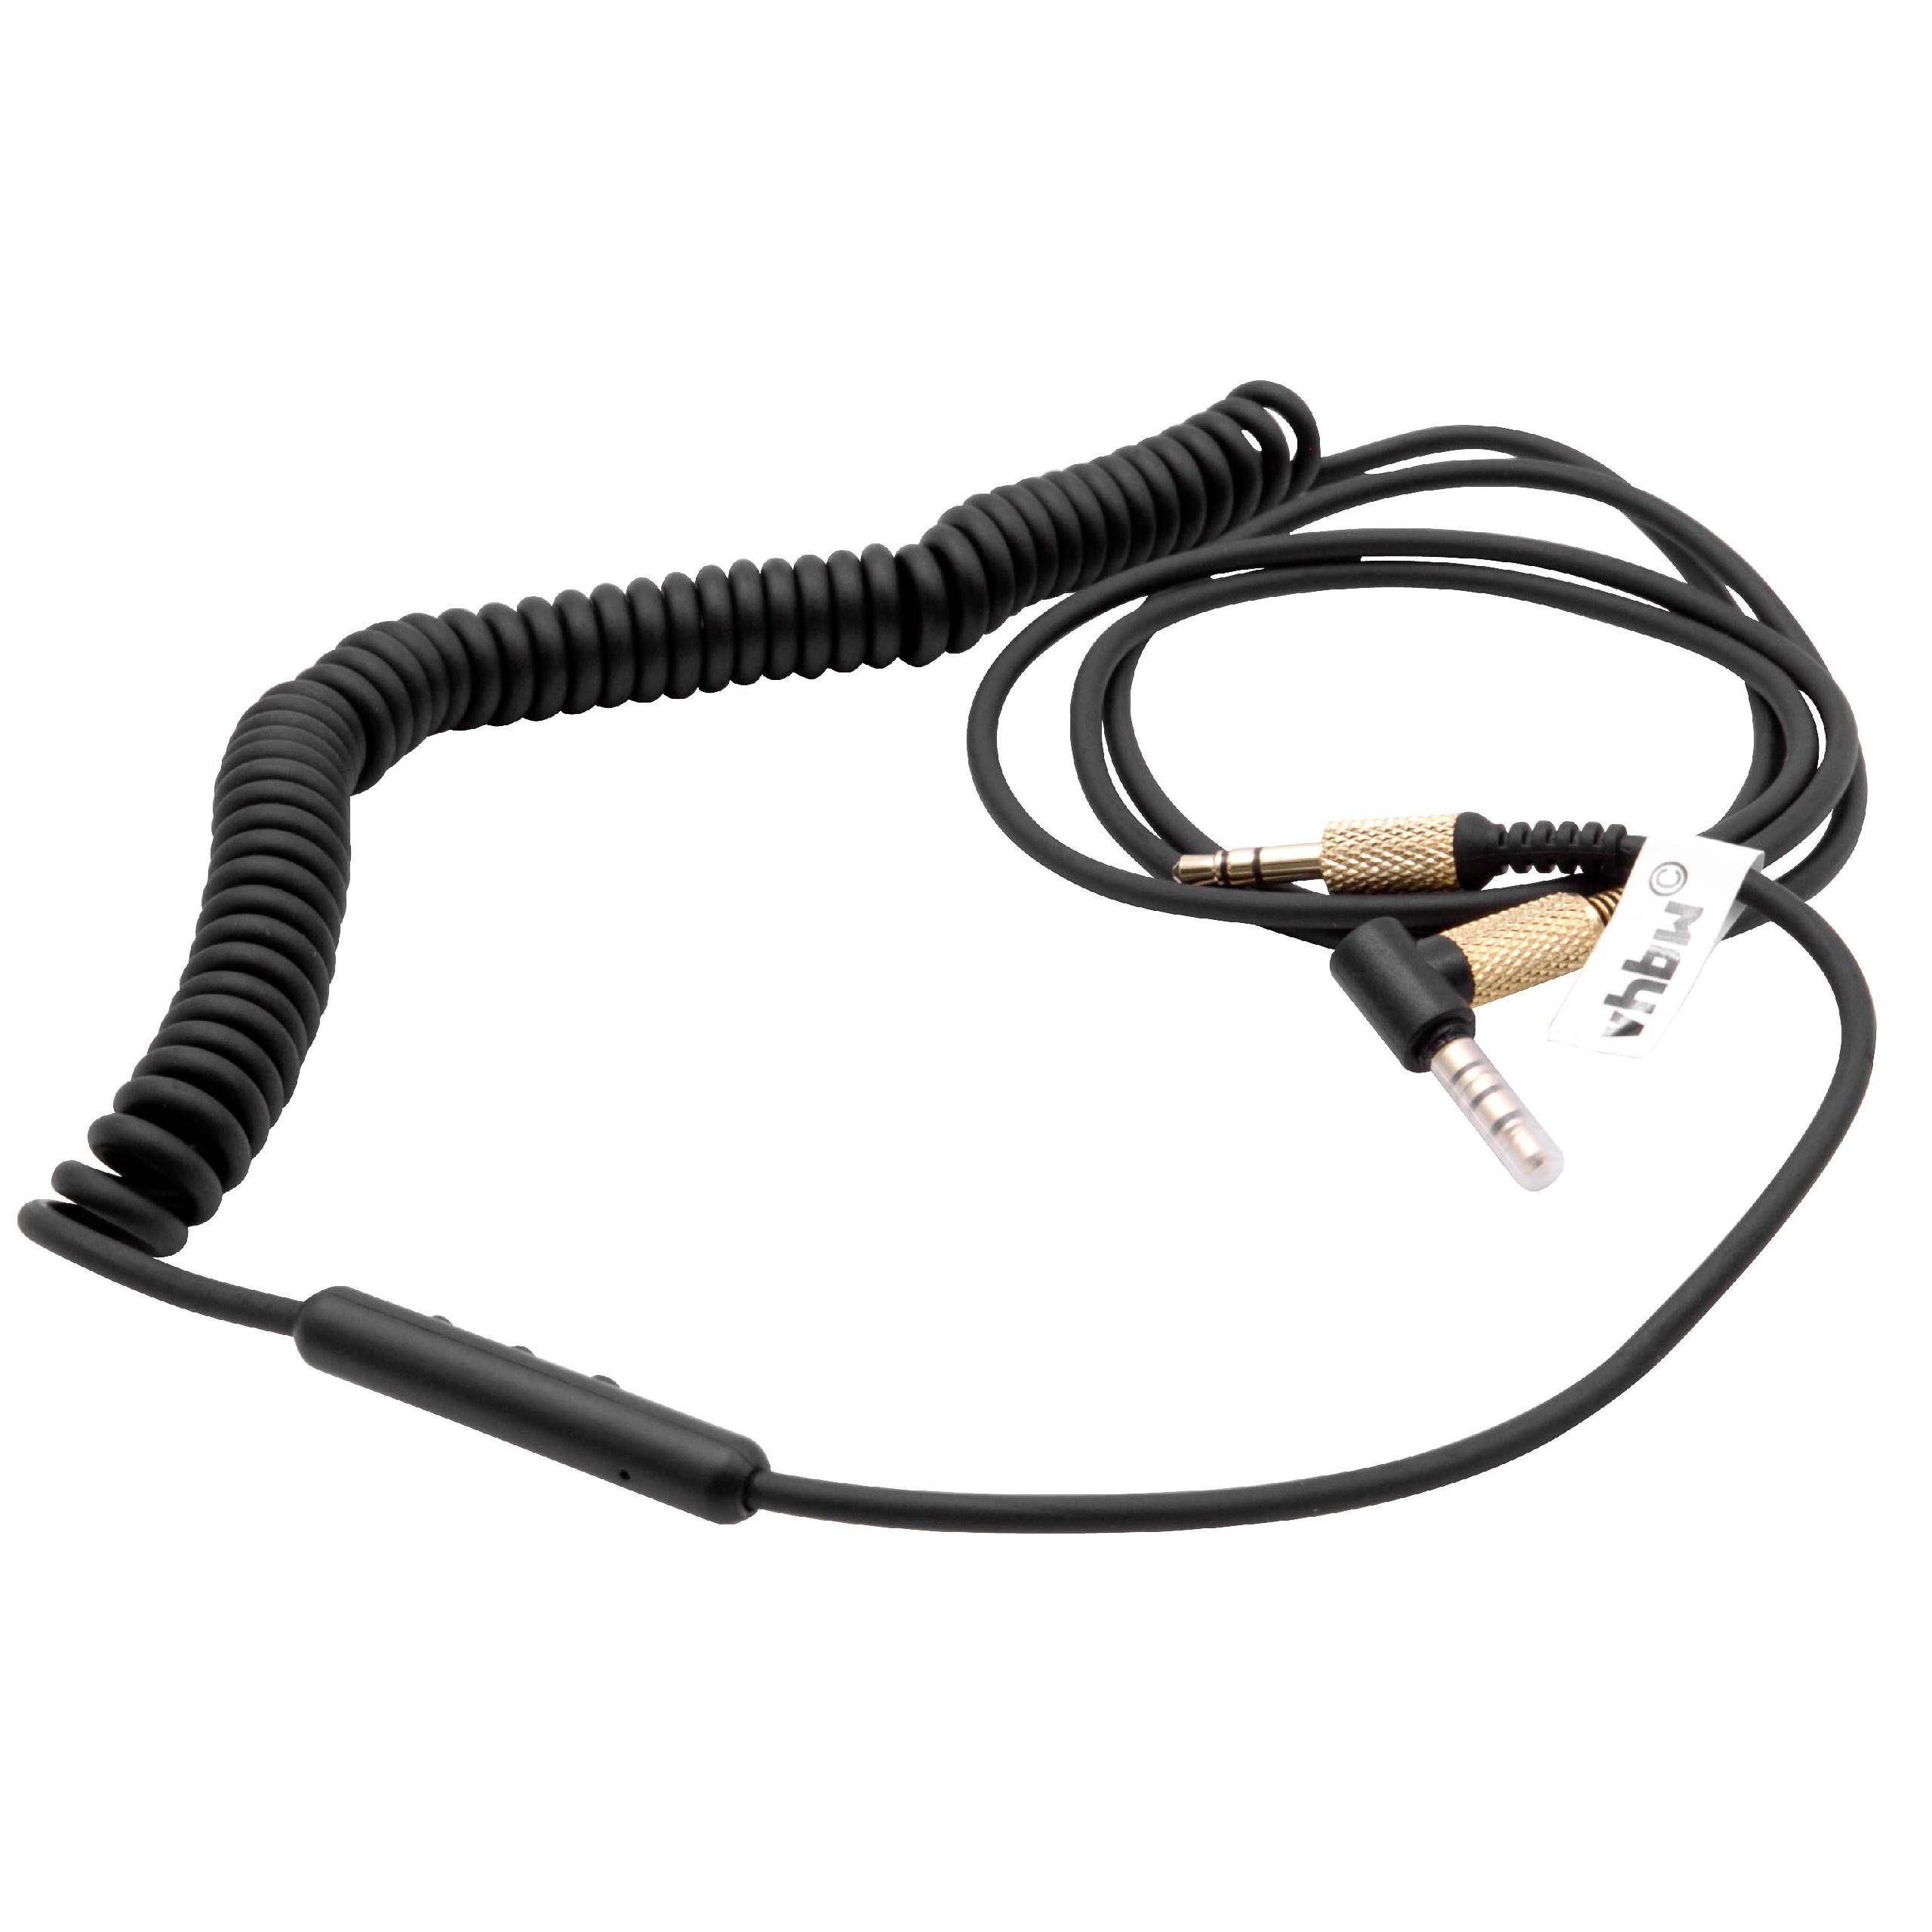 vhbw Audio-Kabel, passend für Marshall Monitor, Woburn, Monitor 2 Kopfhörer  online kaufen | OTTO